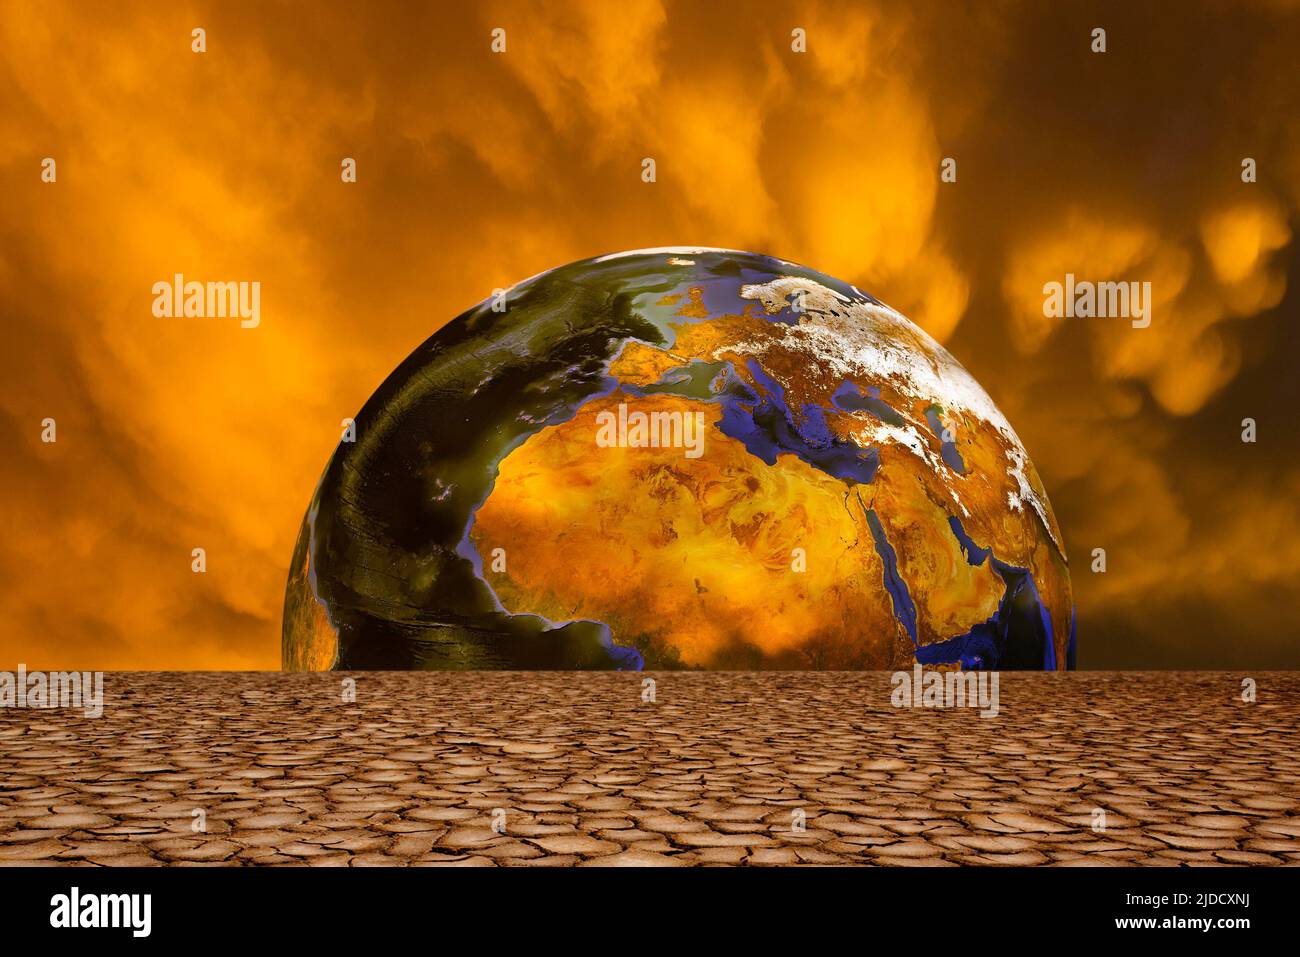 Planète Terre et conditions météorologiques dramatiques, concept de réchauffement de la planète Banque D'Images